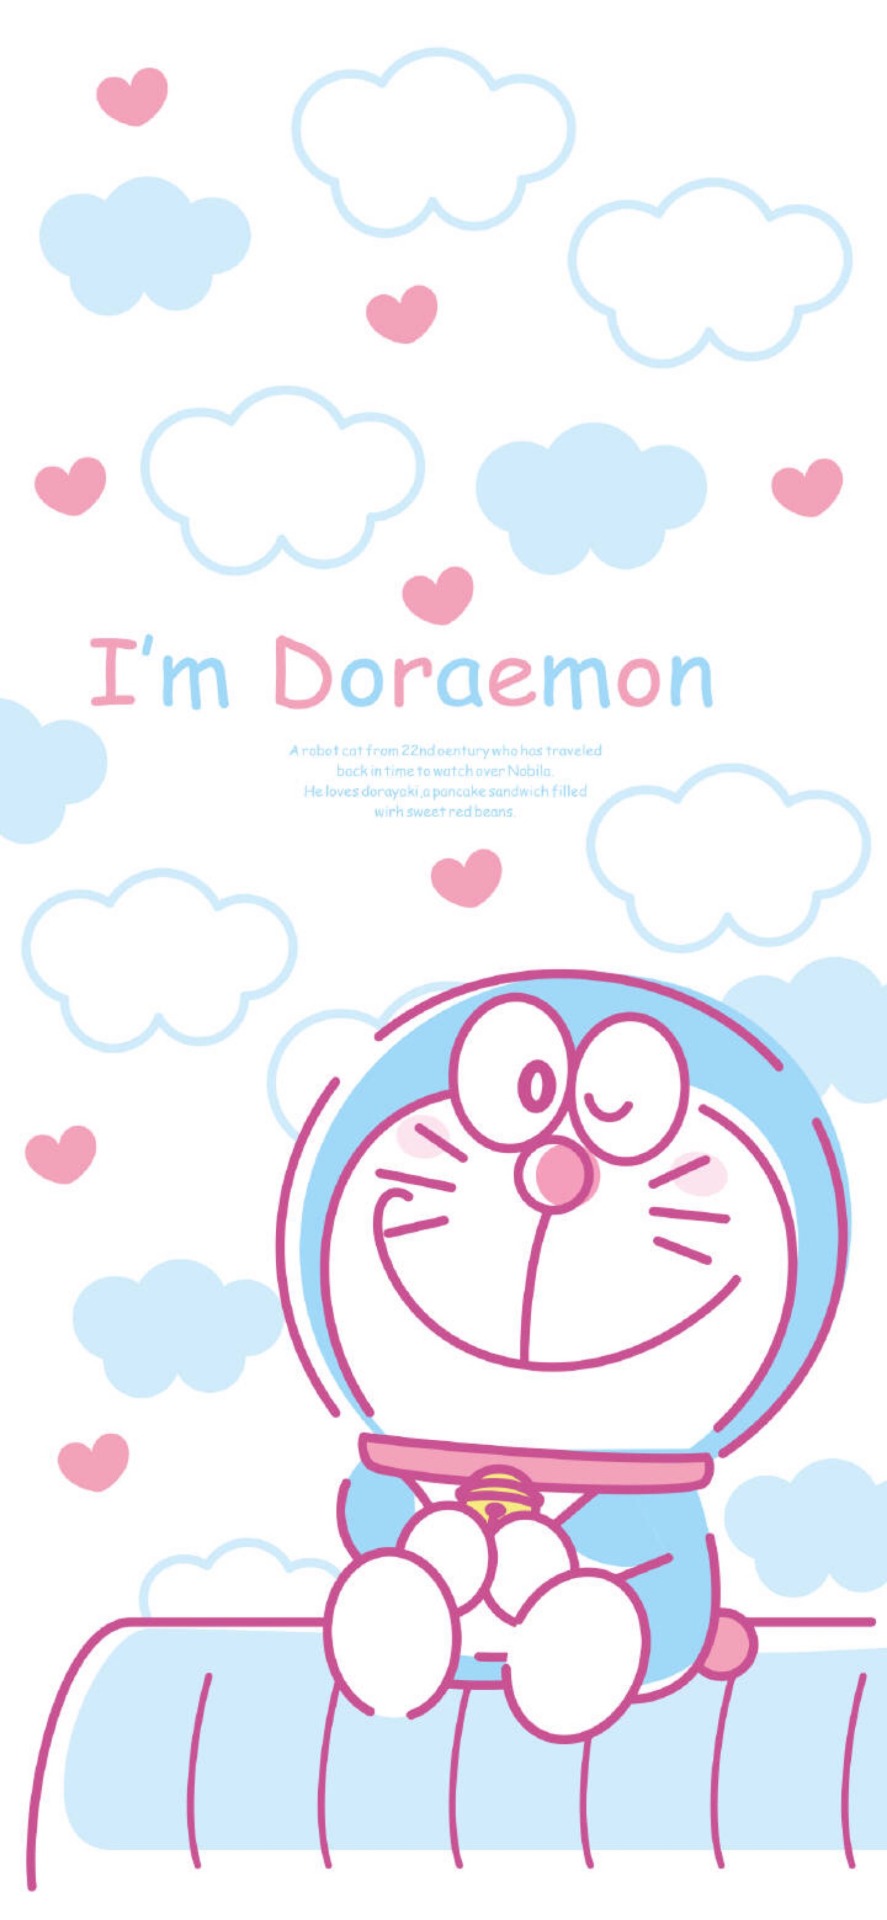 Doraemon Wallpaper Iphone Buy Now Deals 58 OFF wwwacananortheastcom